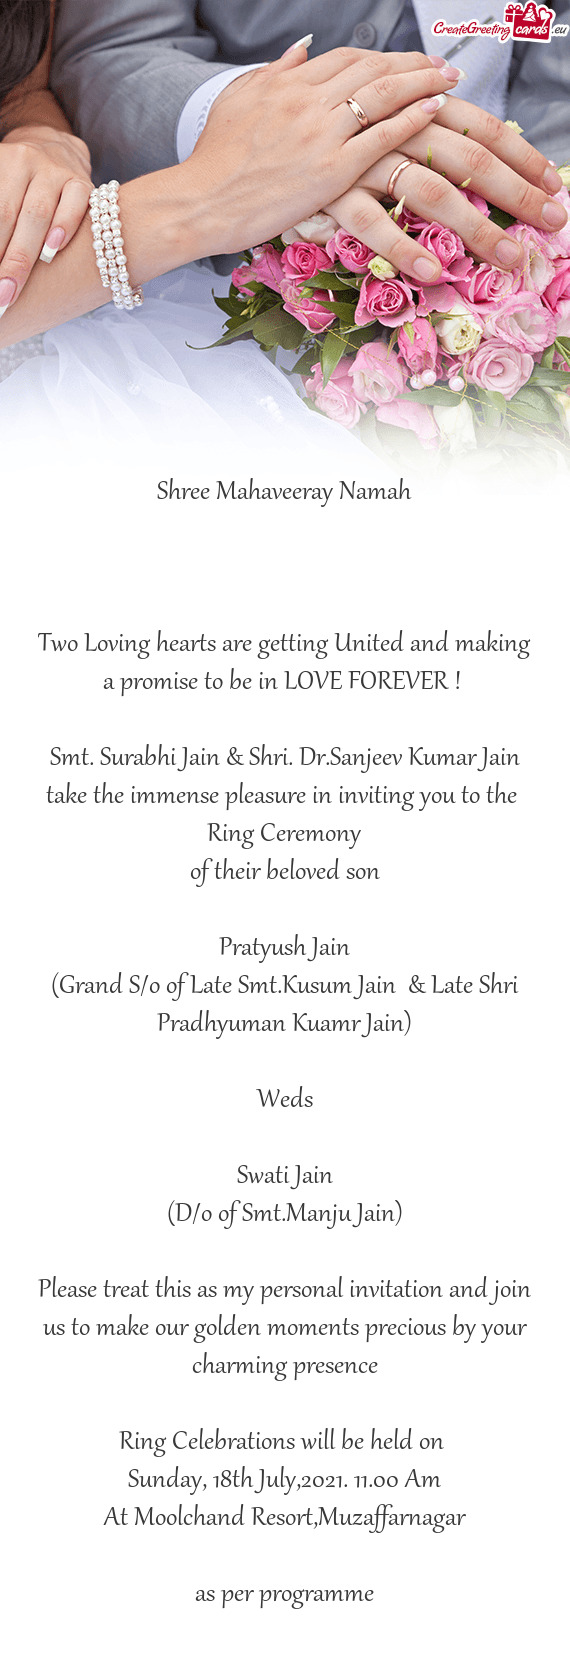 Smt. Surabhi Jain & Shri. Dr.Sanjeev Kumar Jain